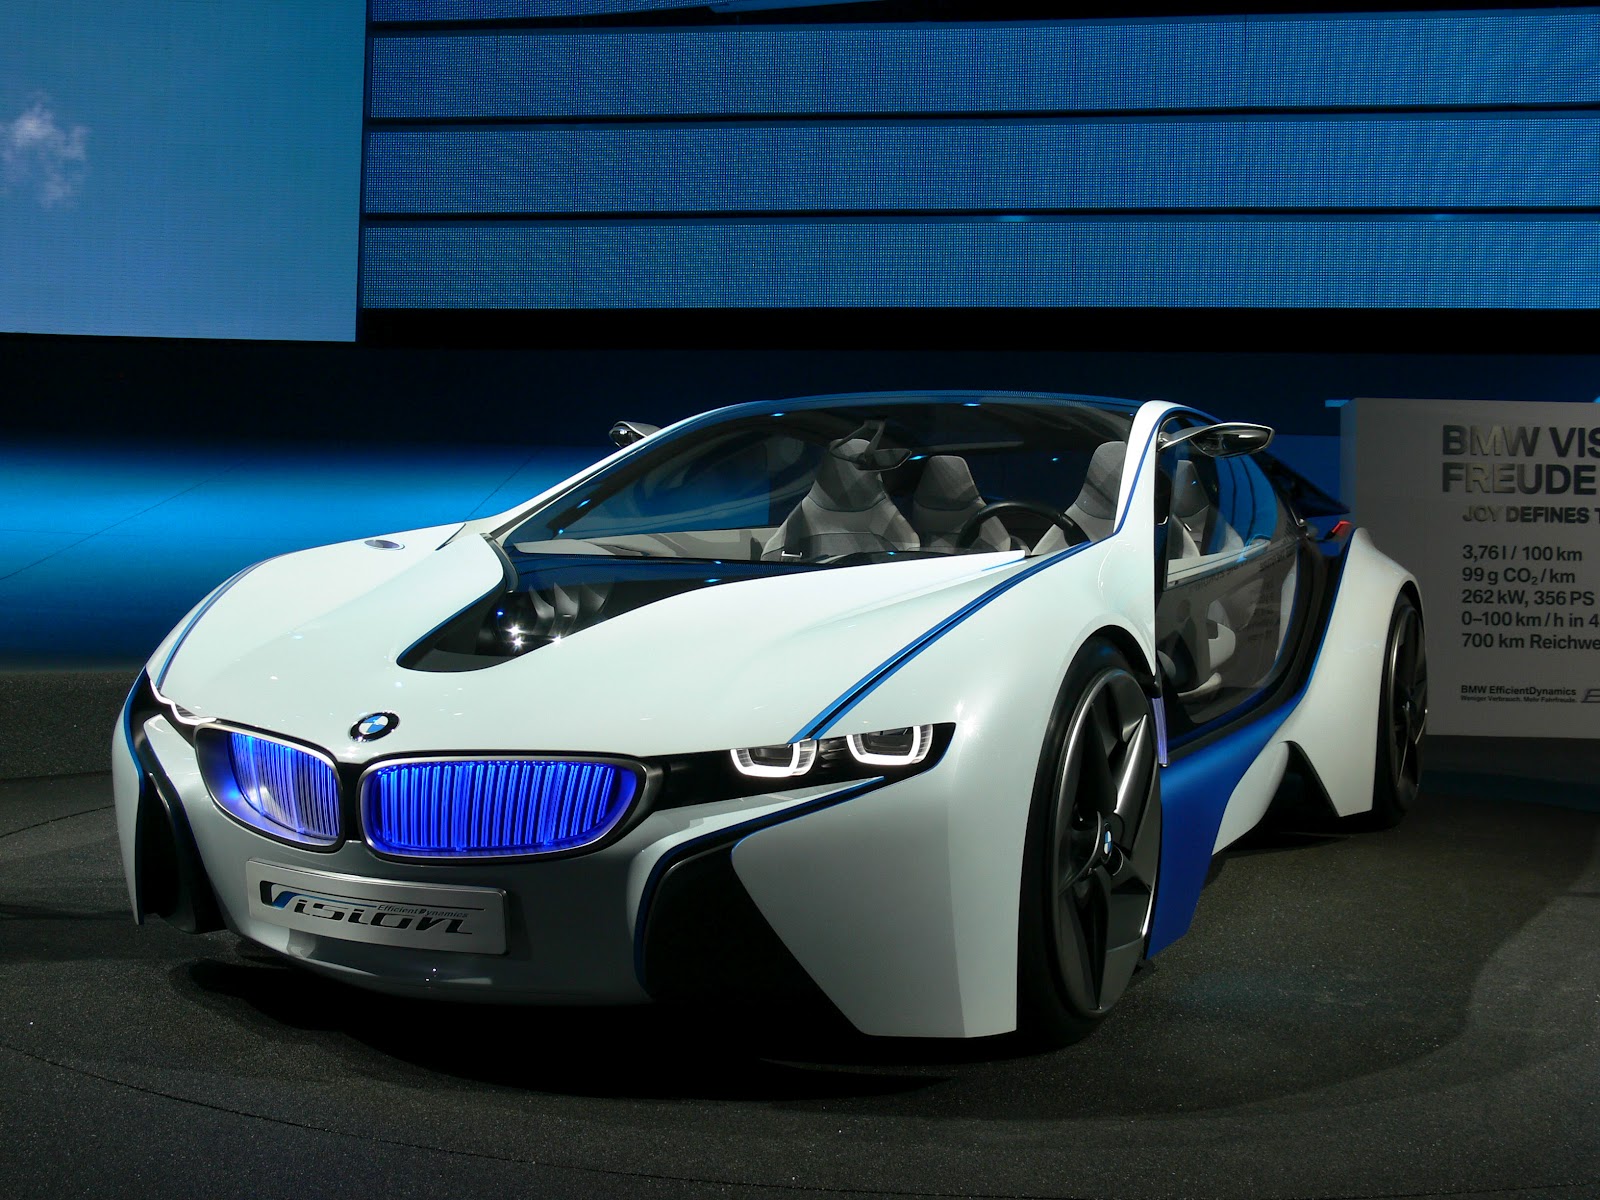 Bmw vision efficient dynamics electric concept car #7